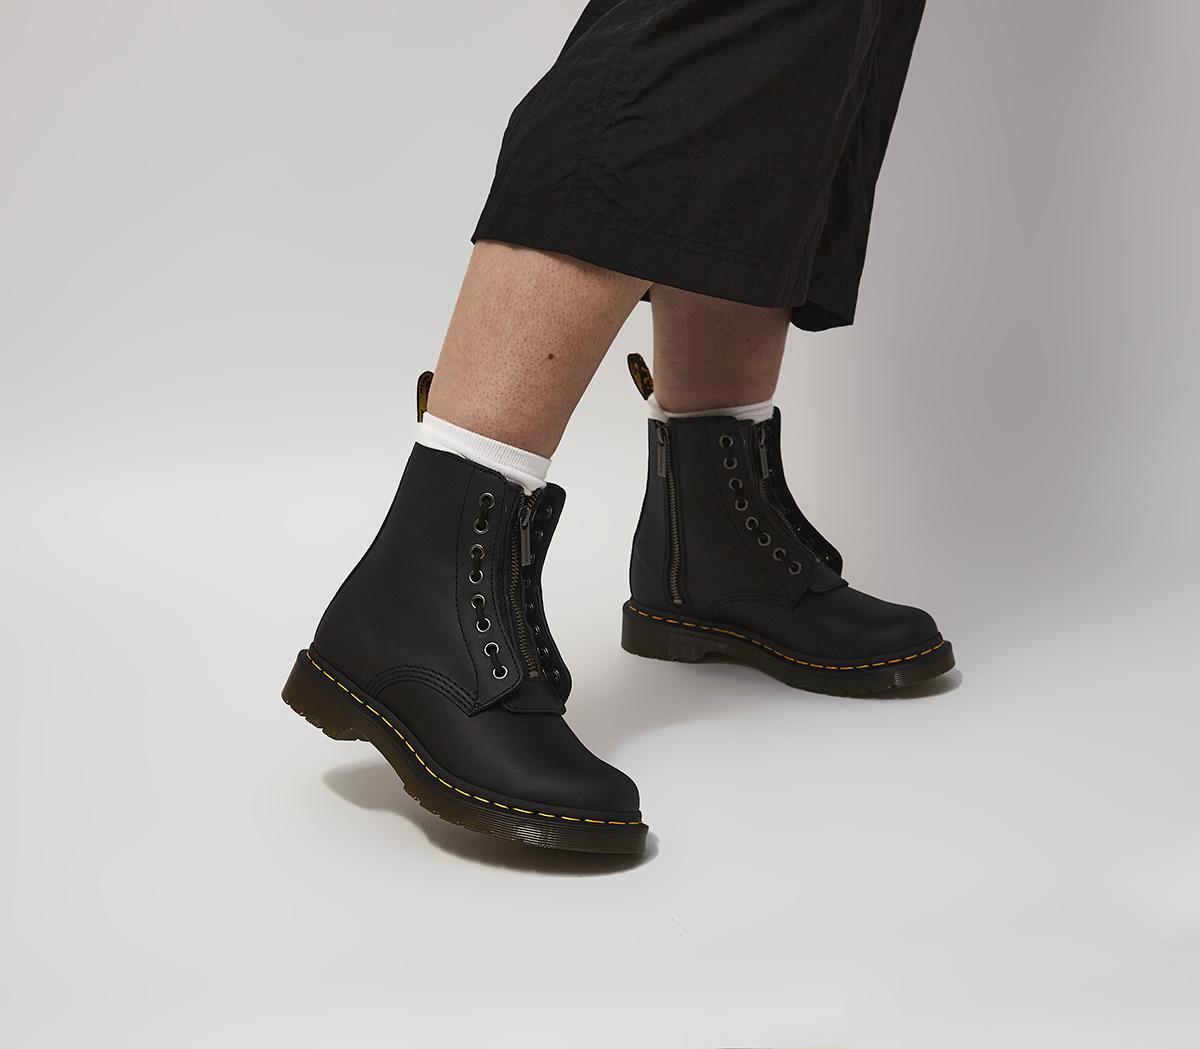 landheer Burger De onze Dr. Martens 1460 Pascal Front Zip Boots Black - Women's Ankle Boots